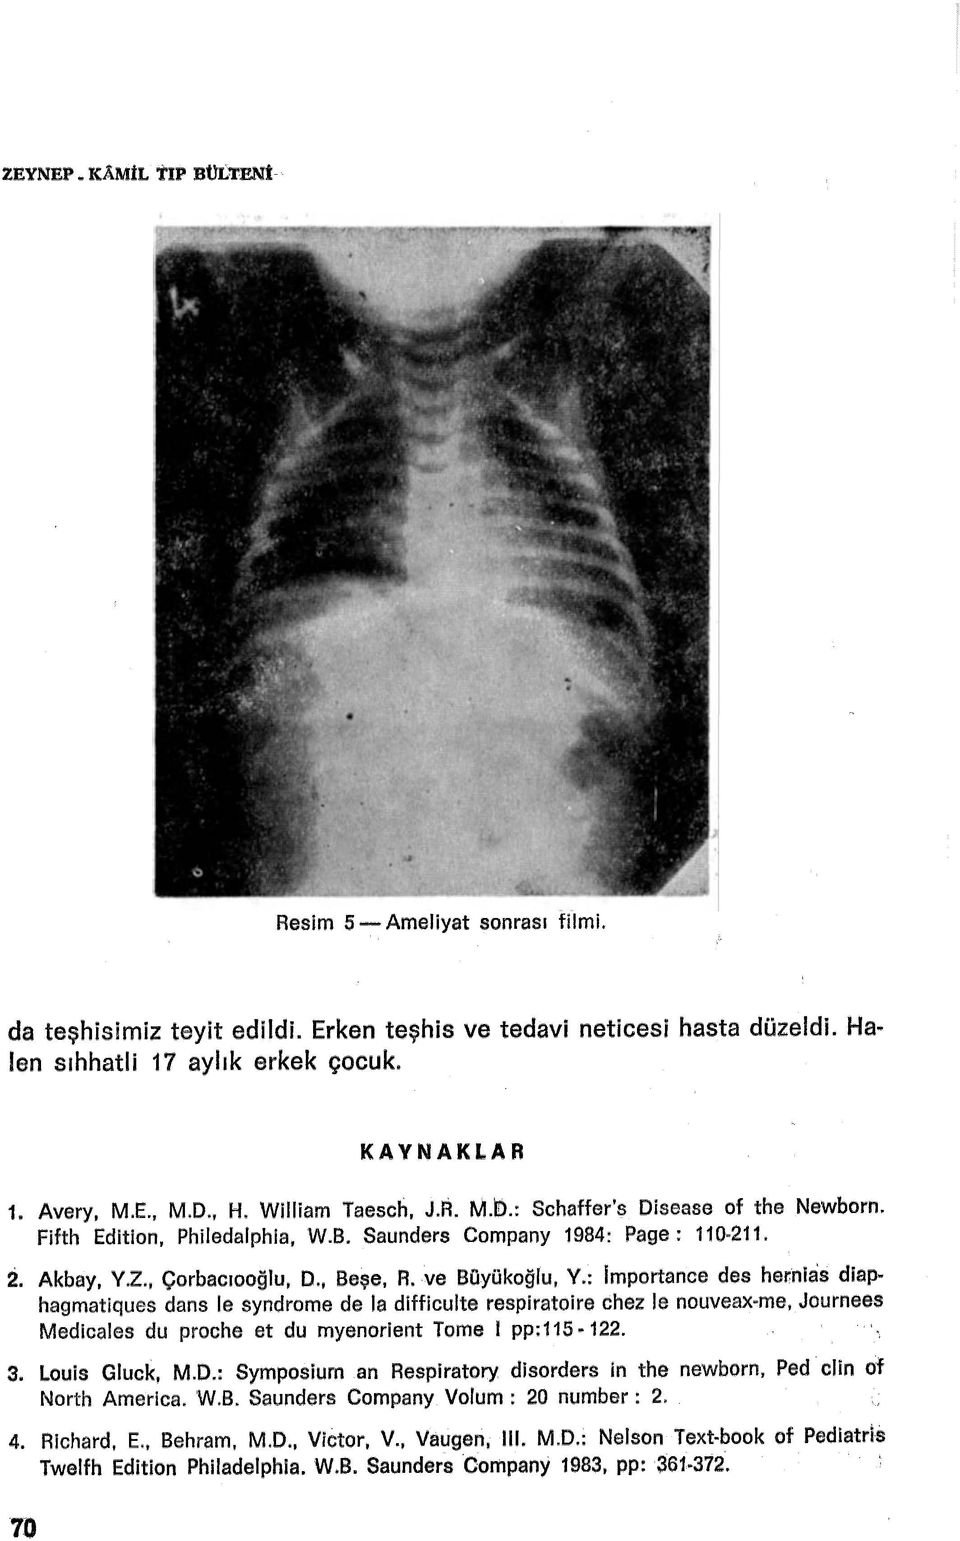 ve Büyükoğlu, V.: lmportance des hernias diaphagmatiques dans le syndrome de la difficulte respiratoire chez le nouveax-me, Journees Medicales du proche et du myenorient Tome 1 pp:115 ~ 122. 3.